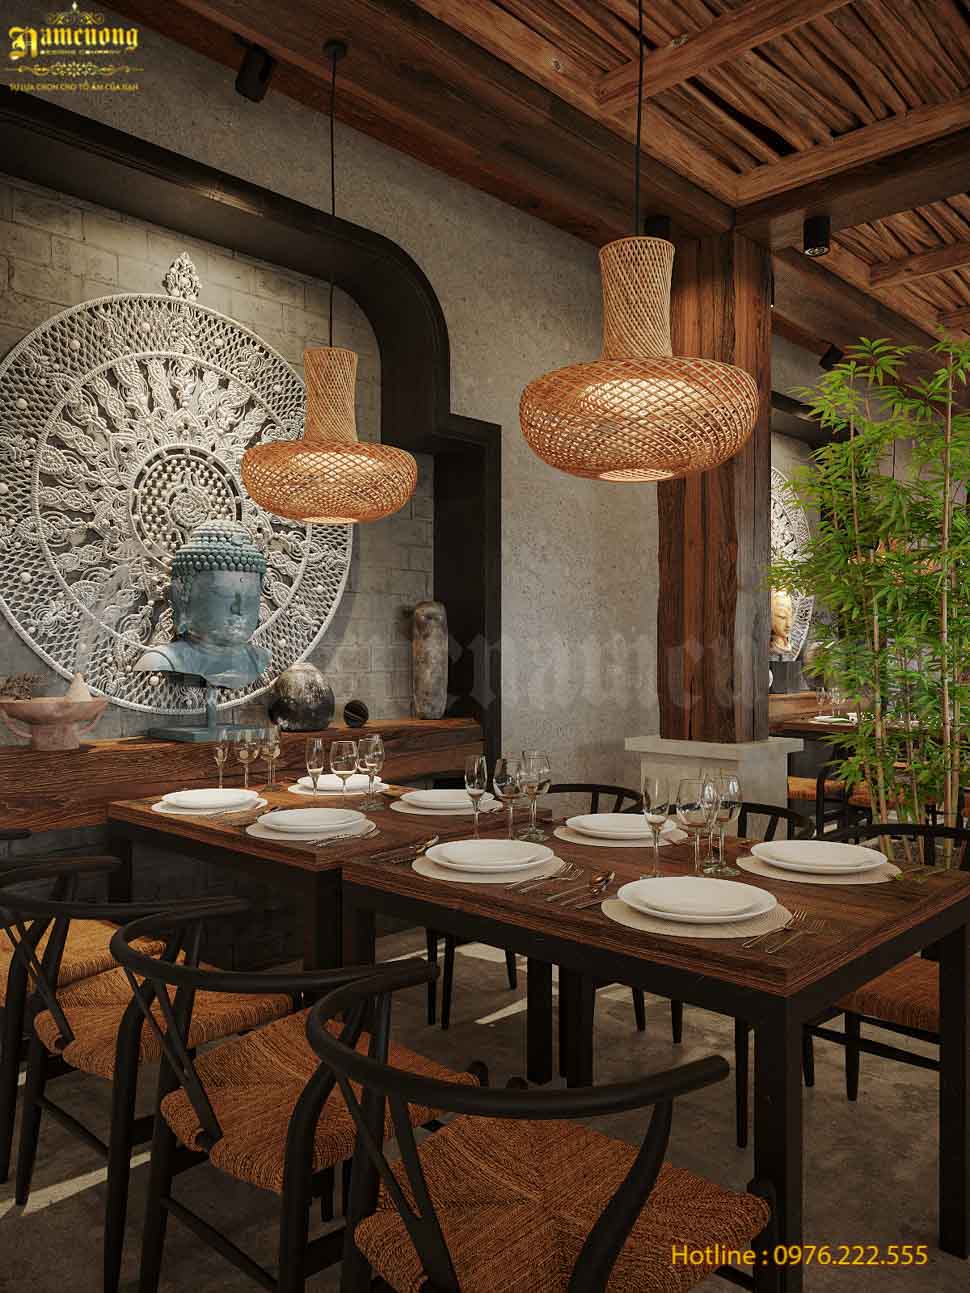 Trang trí tượng Phật trong mẫu thiết kế nhà hàng chay